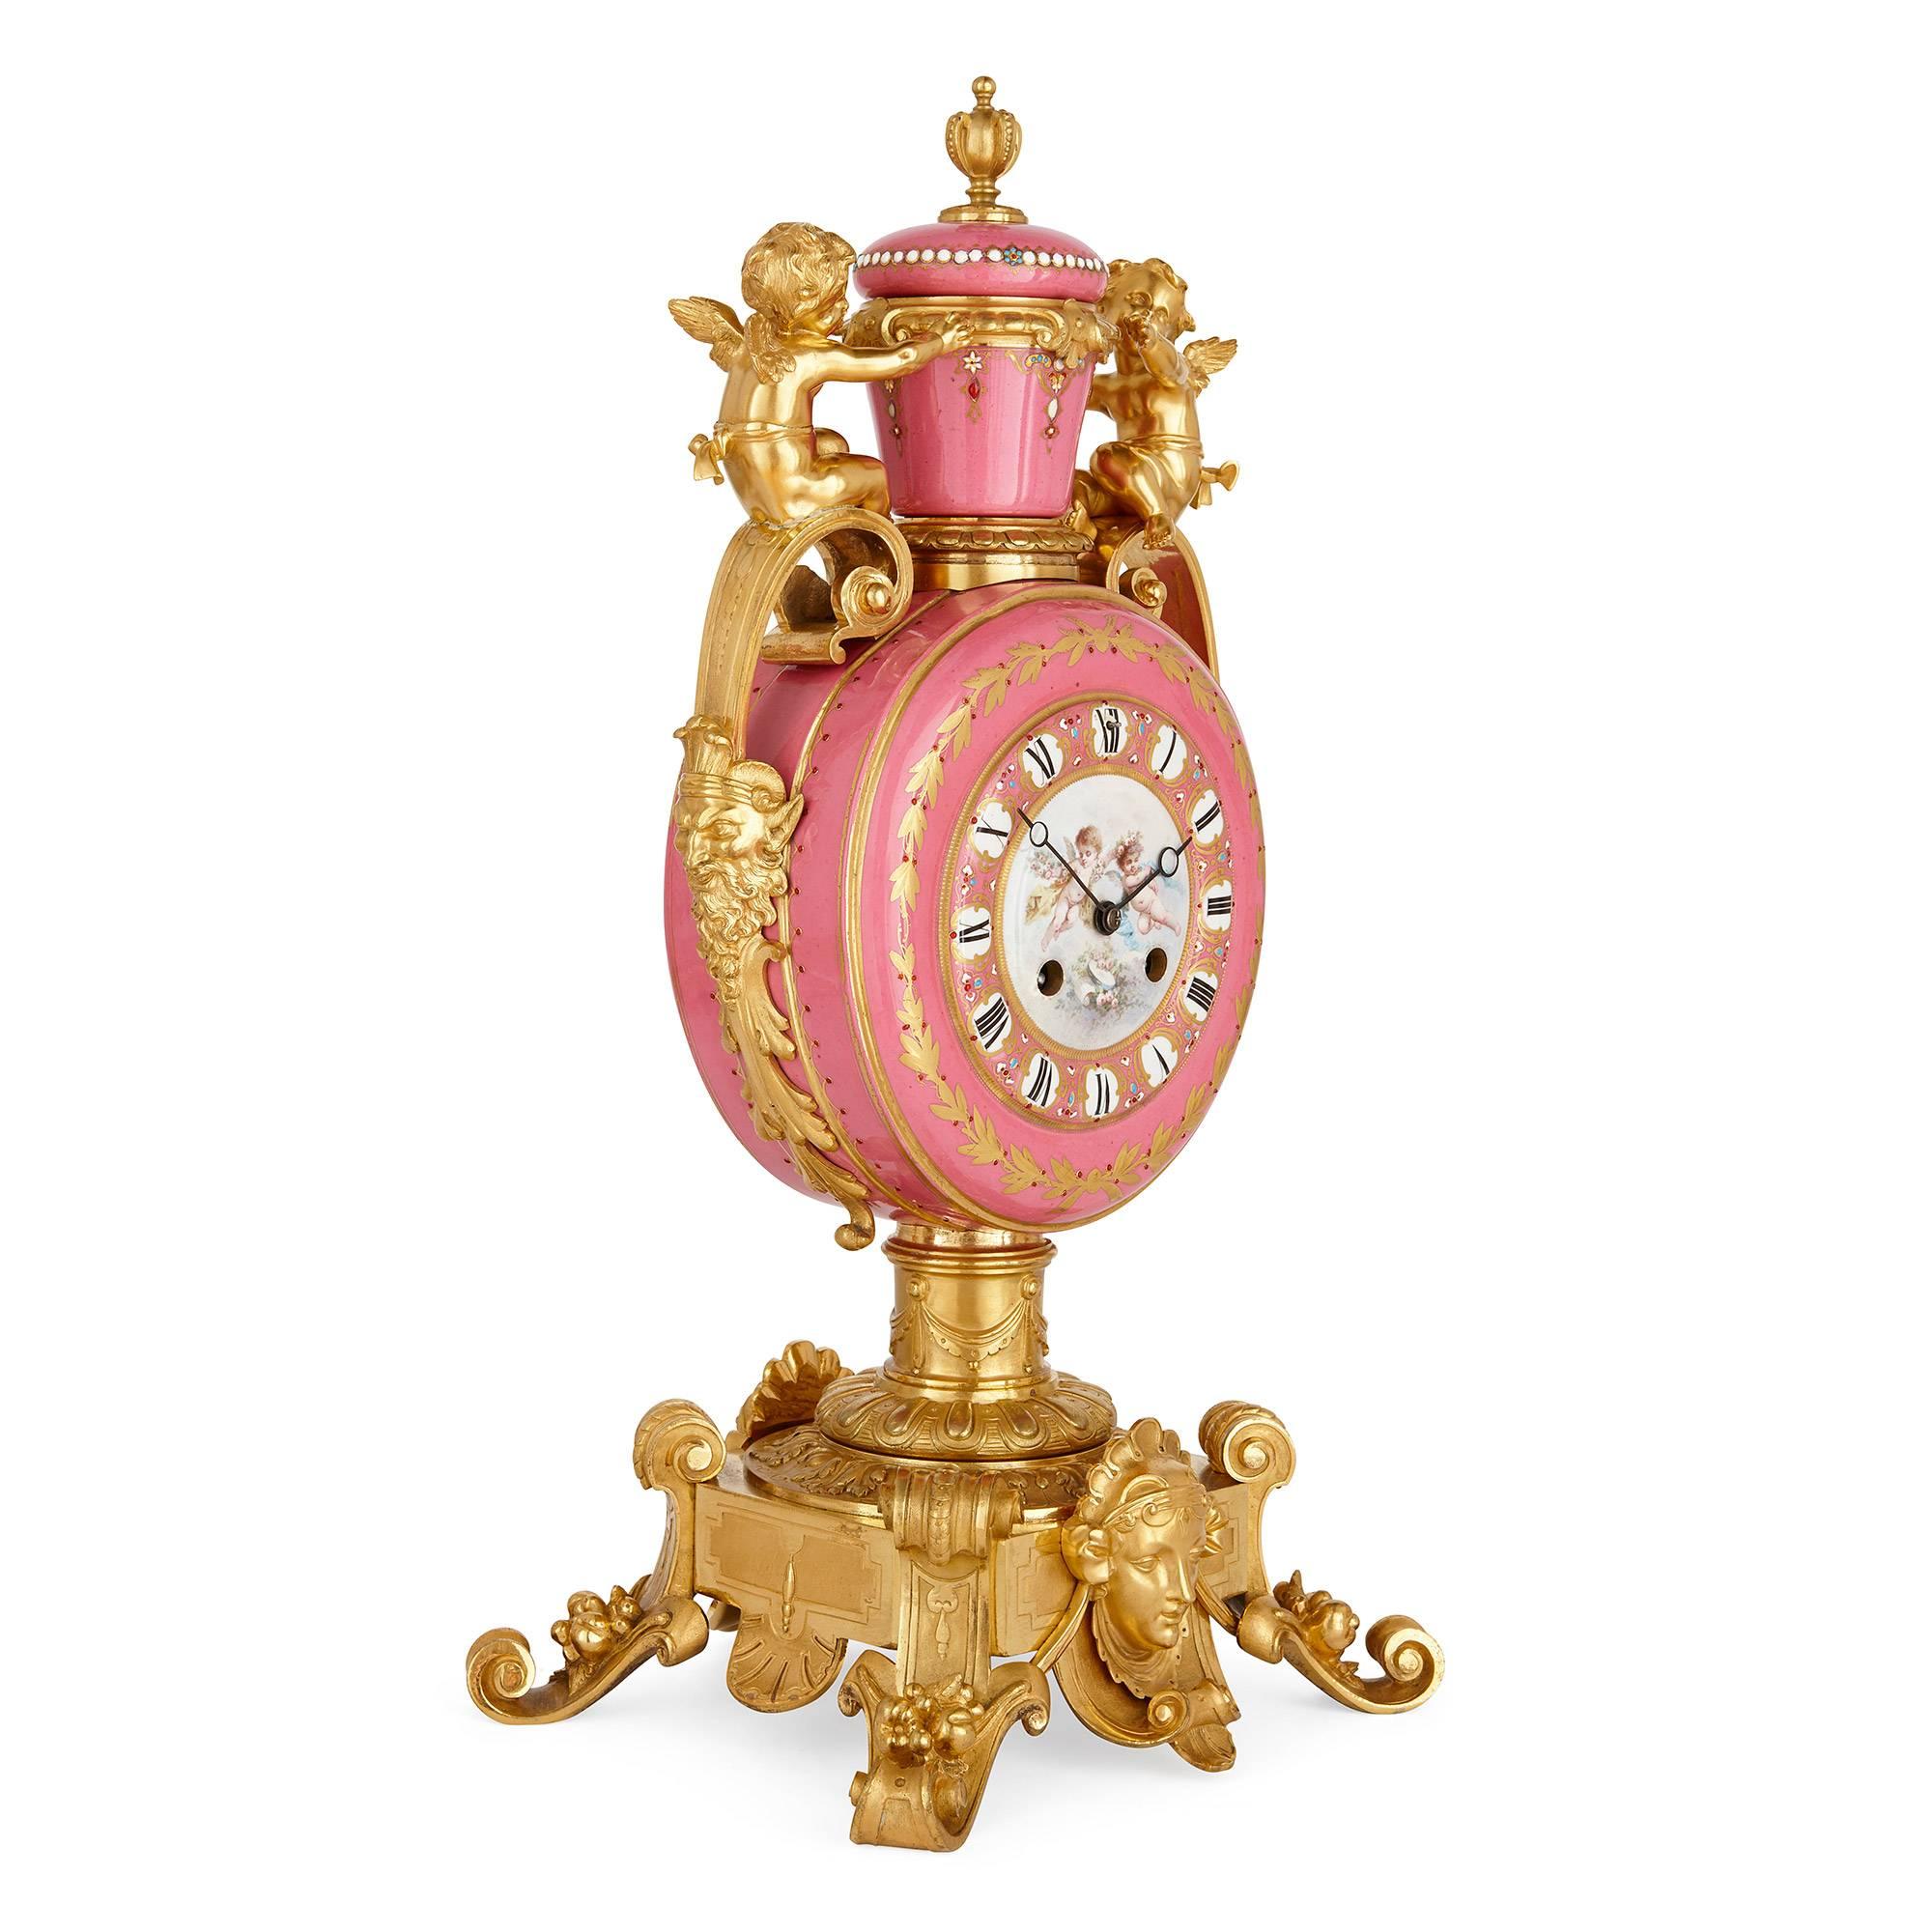 Das prächtige Uhrenset im neoklassischen Stil ist eine schöne Ergänzung für jede elegante Einrichtung. 

Das dreiteilige, antike französische Uhrenset besteht aus einer zentralen Uhr und einem Paar flankierender Vasen, die alle in rosafarbenem